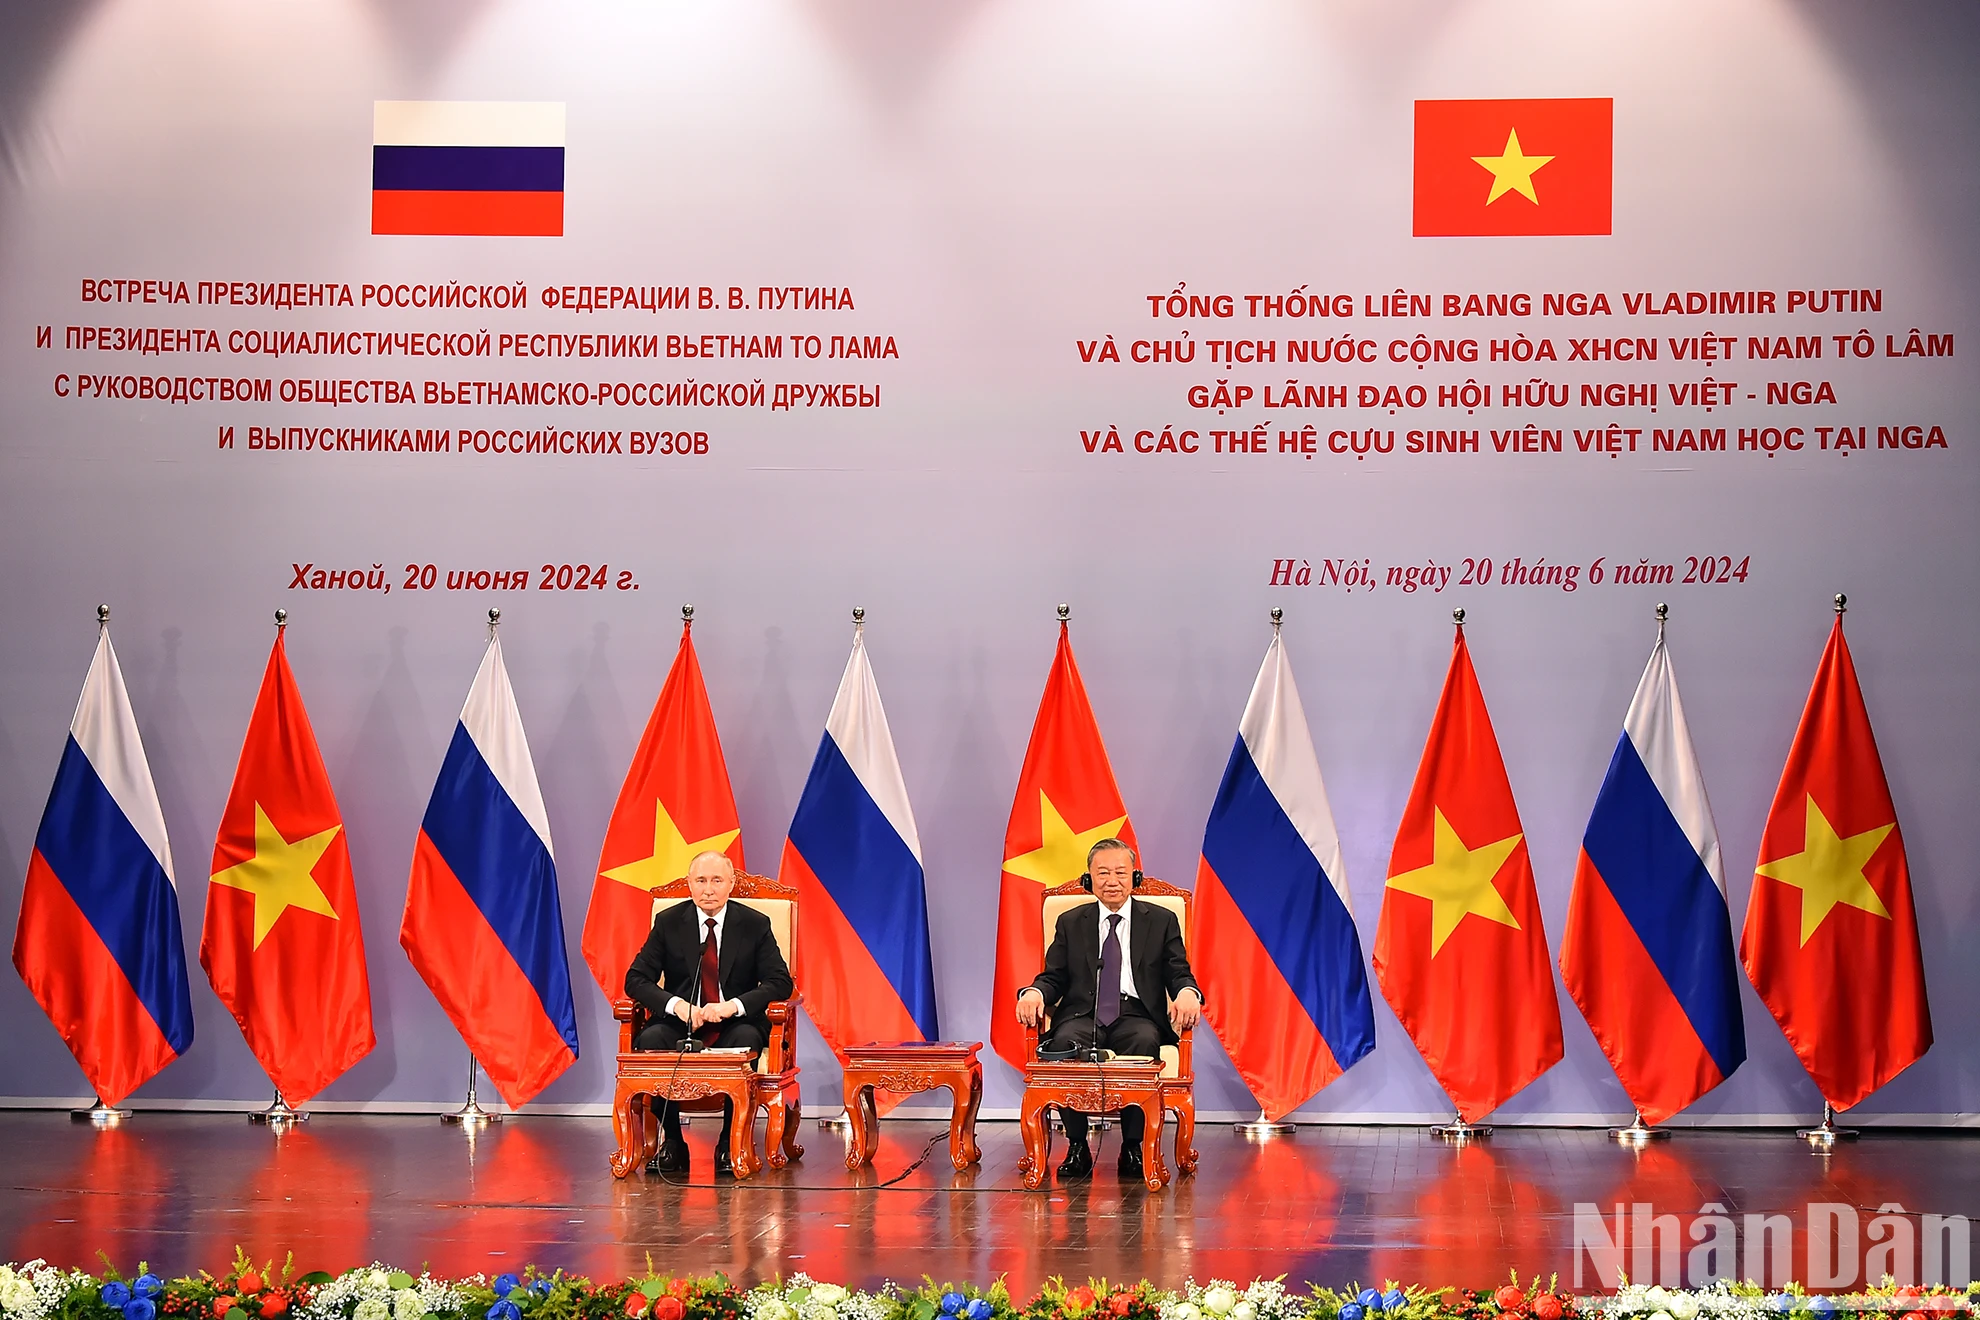 [Ảnh] Chủ tịch nước Tô Lâm và Tổng thống Vladimir Putin gặp lãnh đạo Hội hữu nghị Việt-Nga và các thế hệ cựu sinh viên Việt Nam học tại Nga ảnh 2